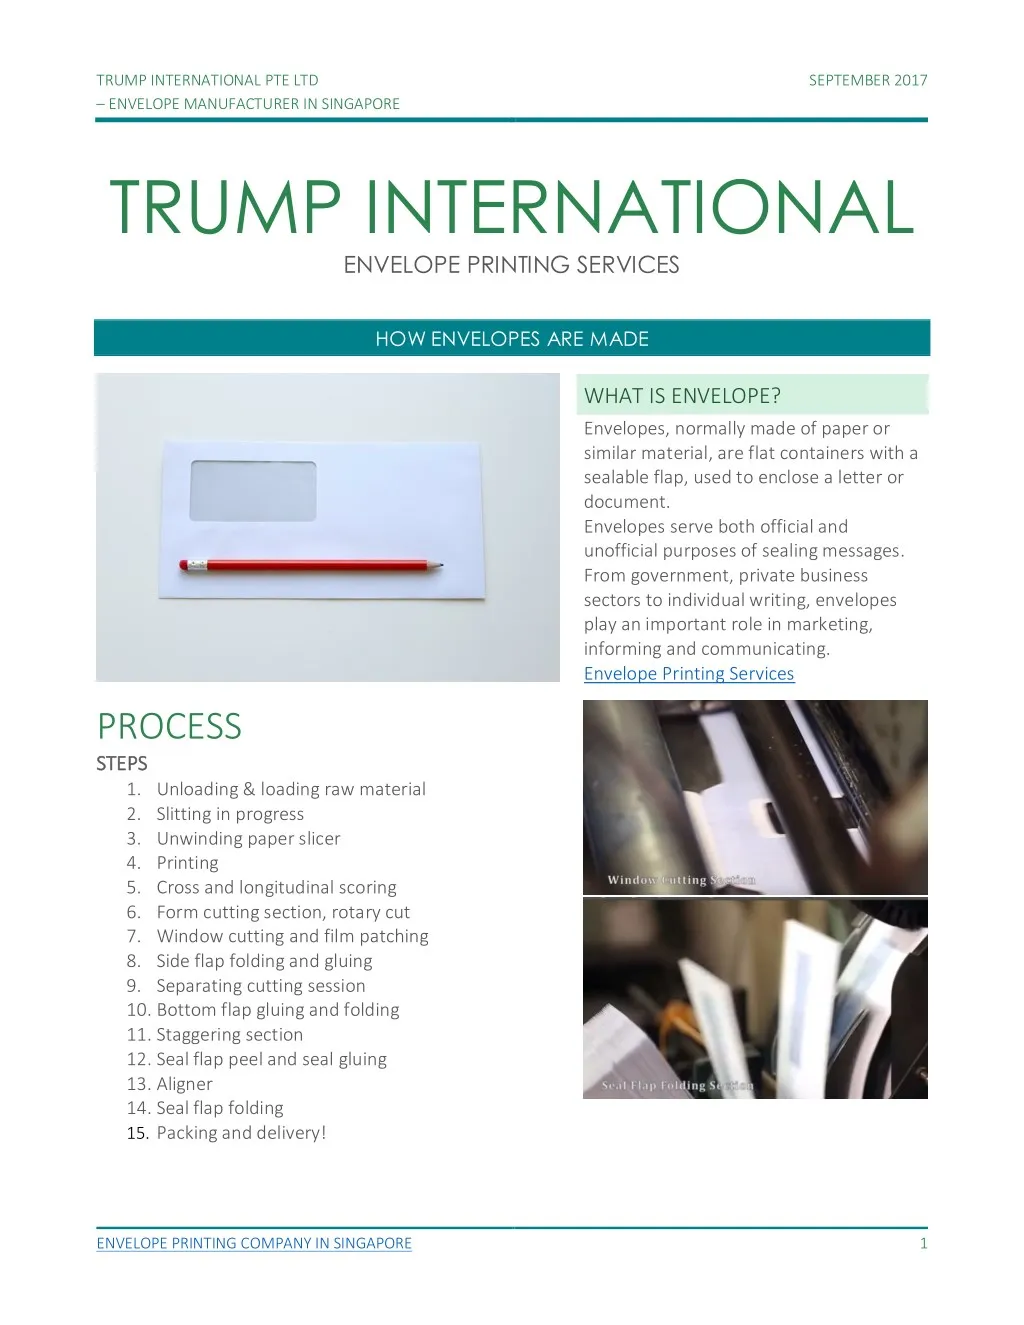 trump international pte ltd envelope manufacturer